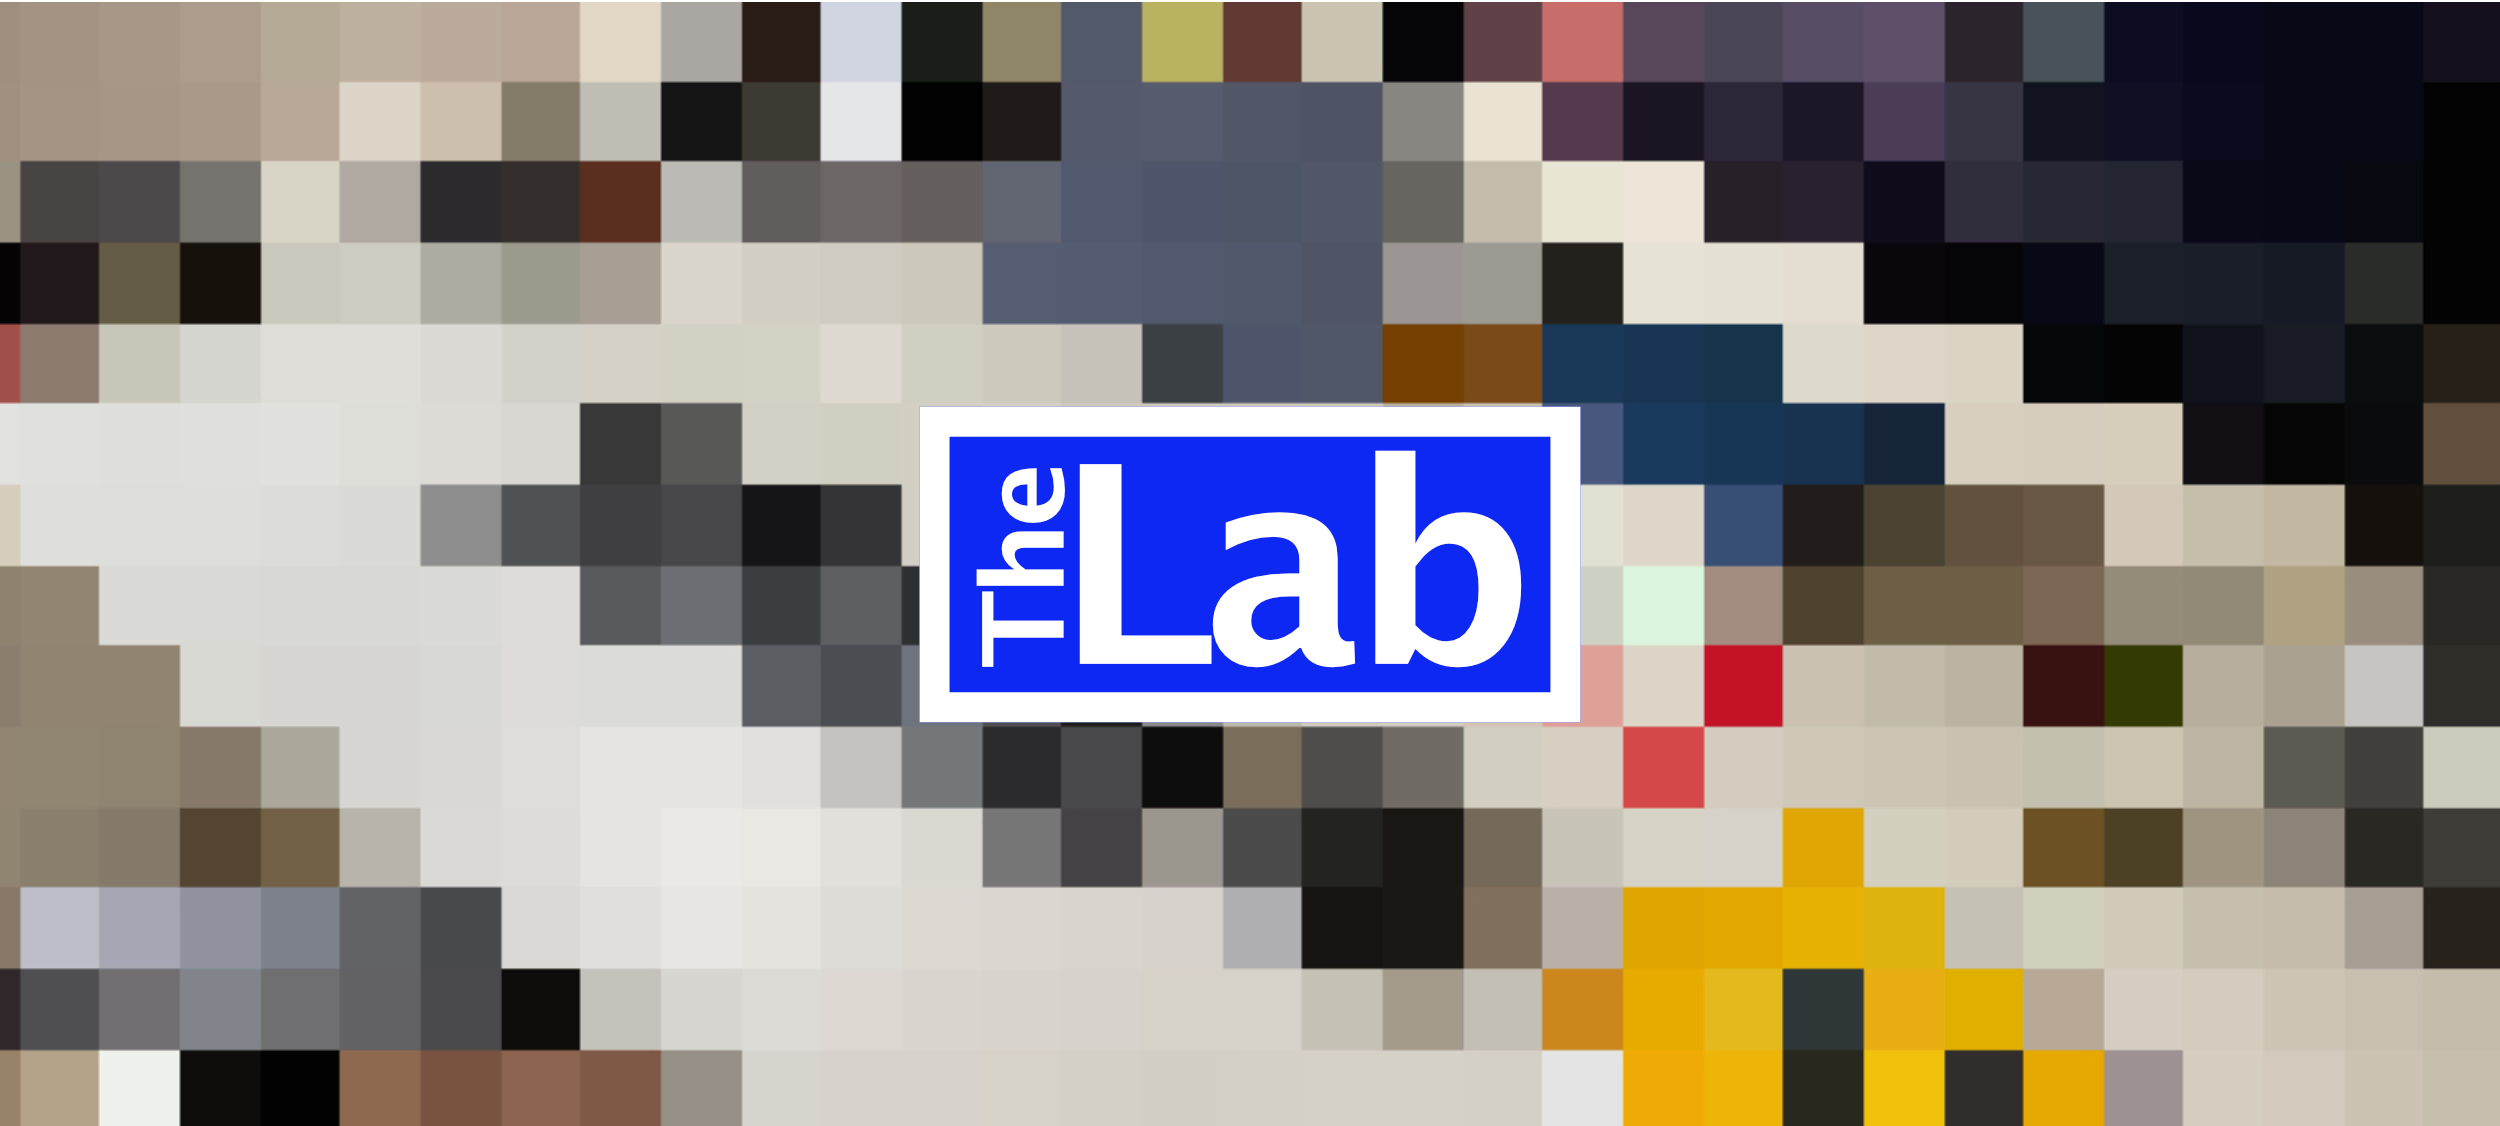 The Lab.